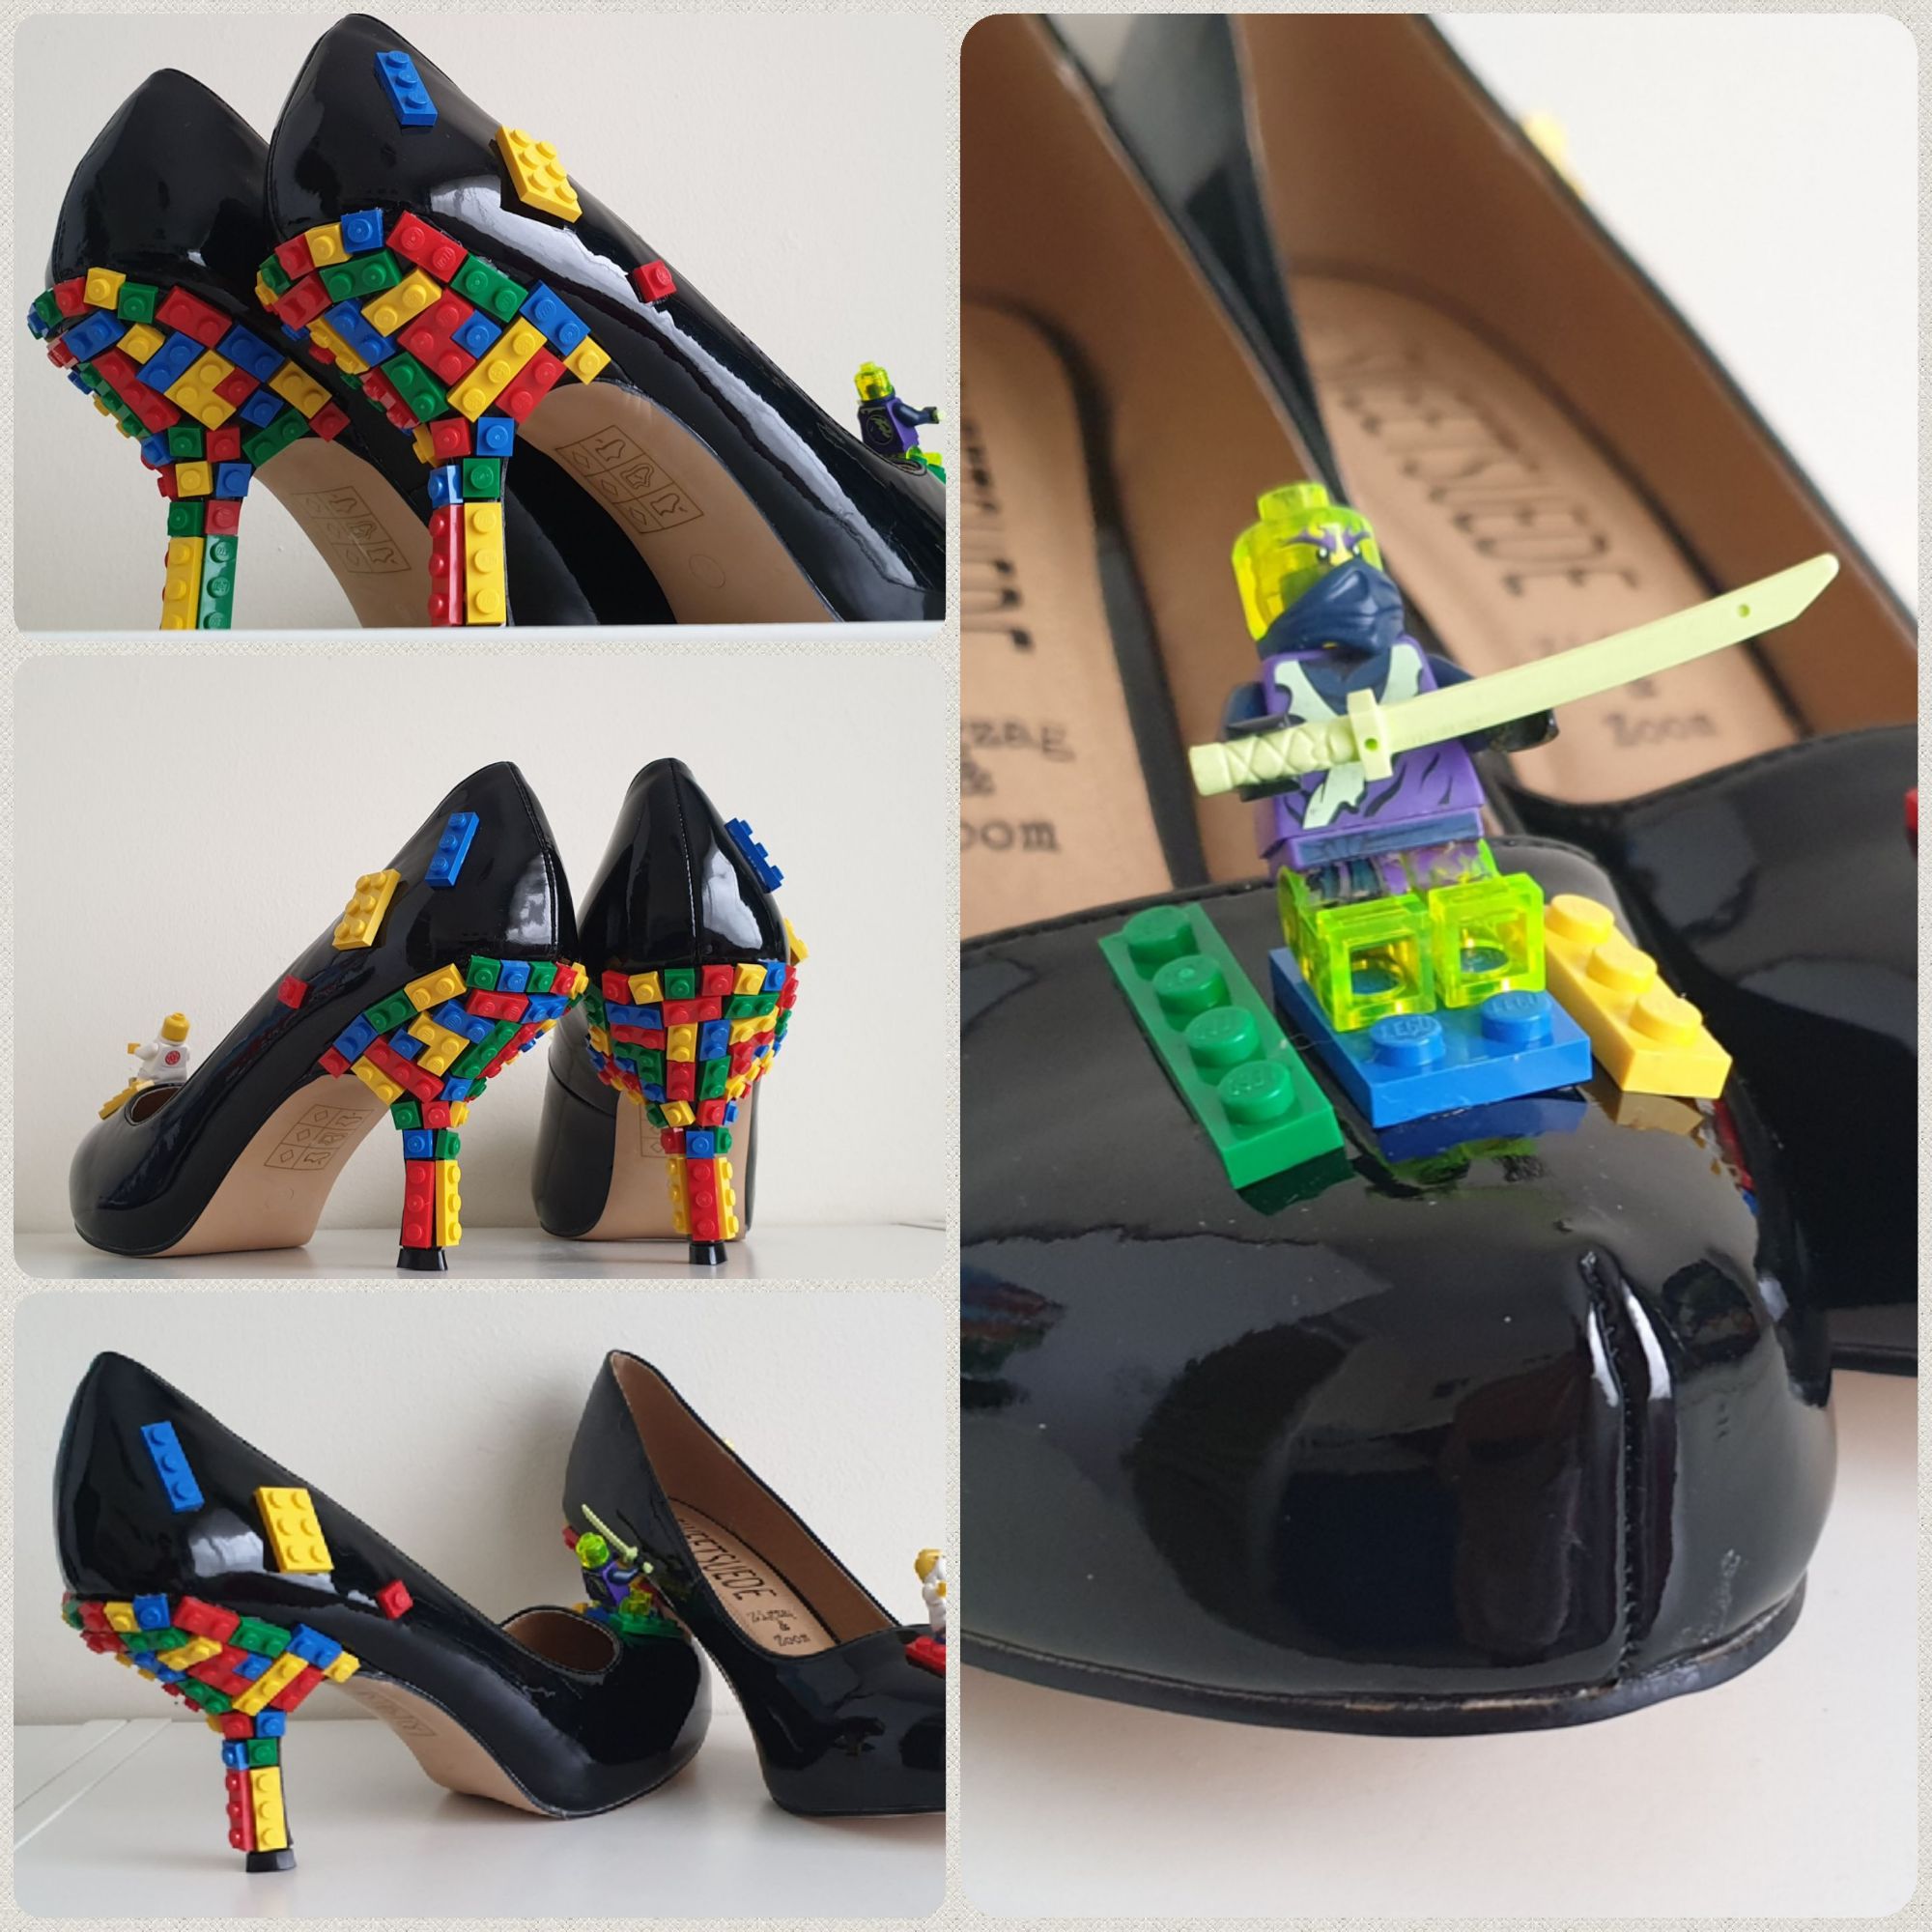 Customised Lego shoes